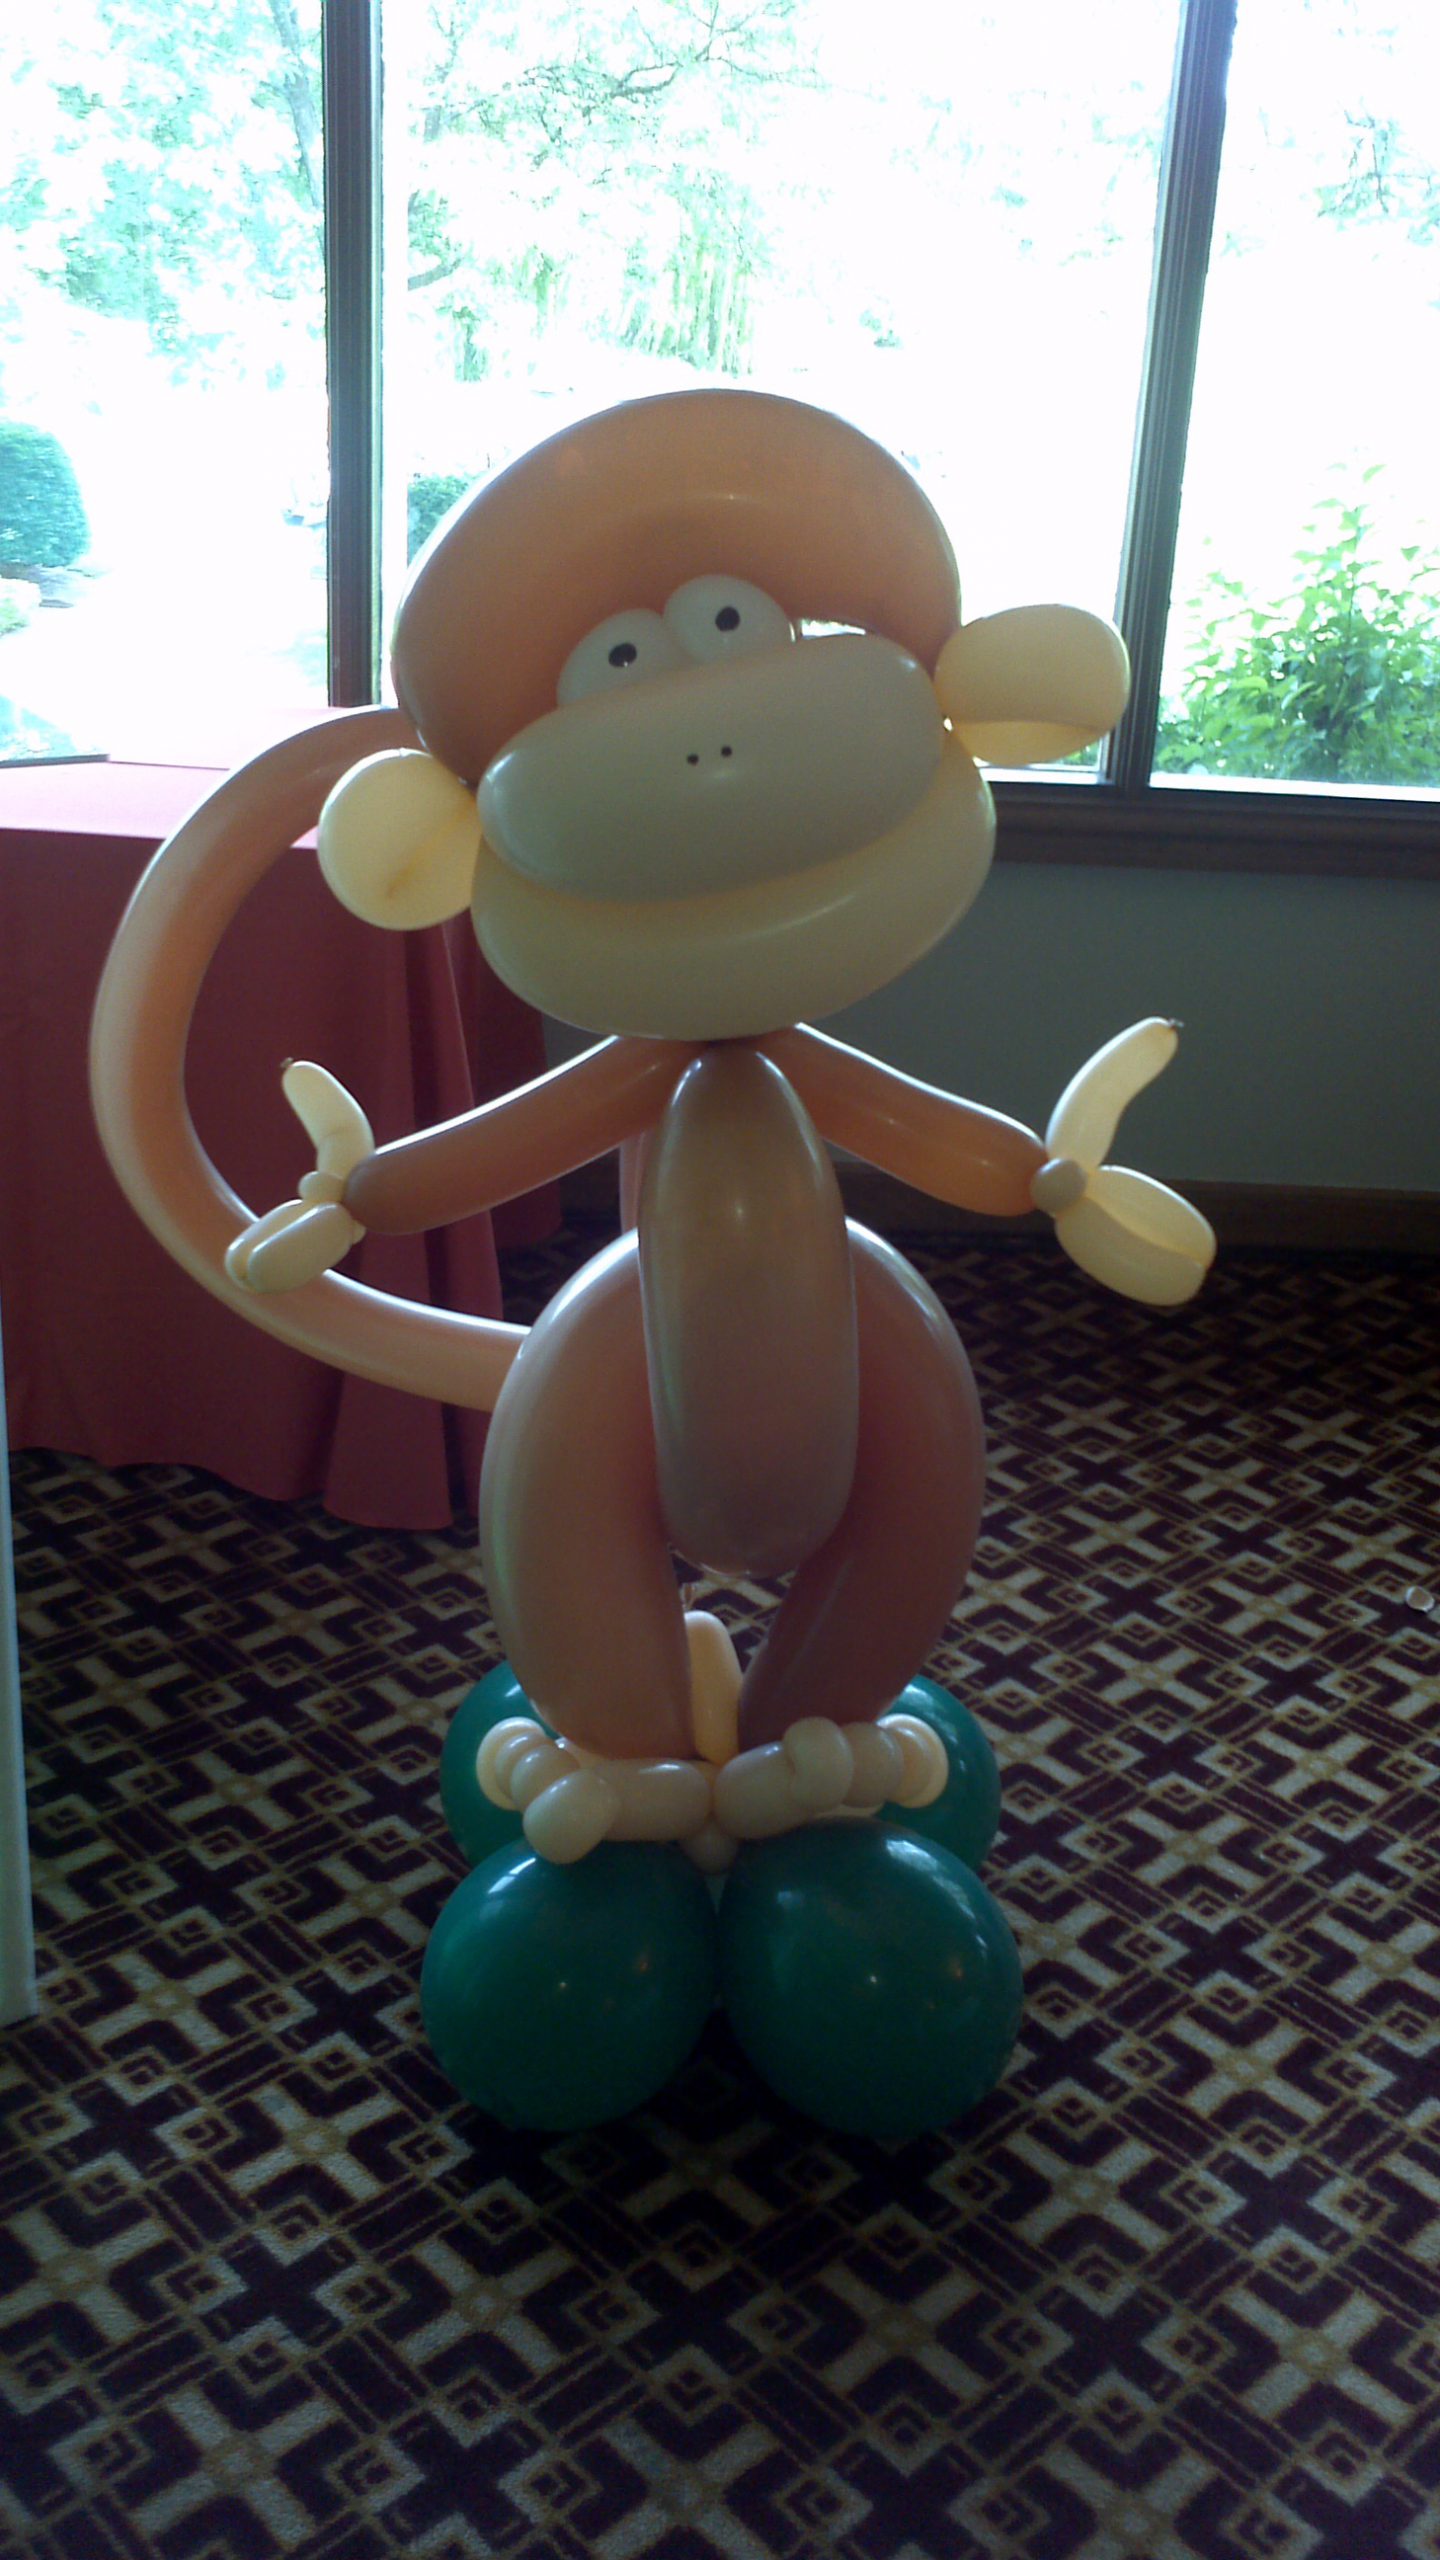 Balloon monkey